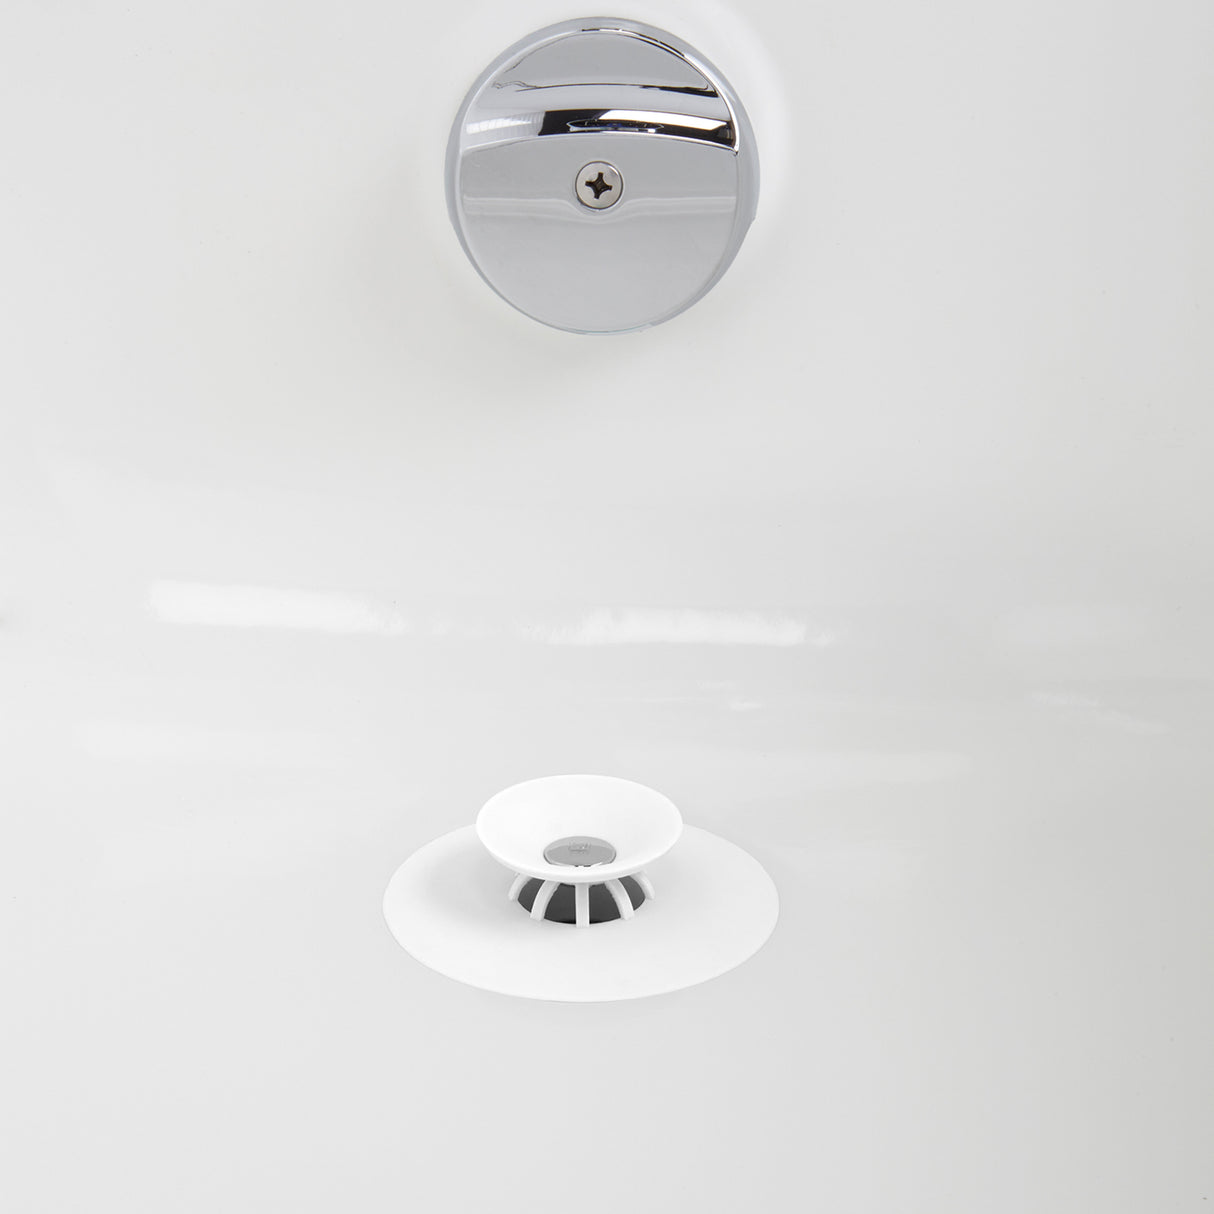 Flex Drain Plug & Hair Catcher - Umbra  Drain plugs, Bathtub drain,  Clogged drain bathtub